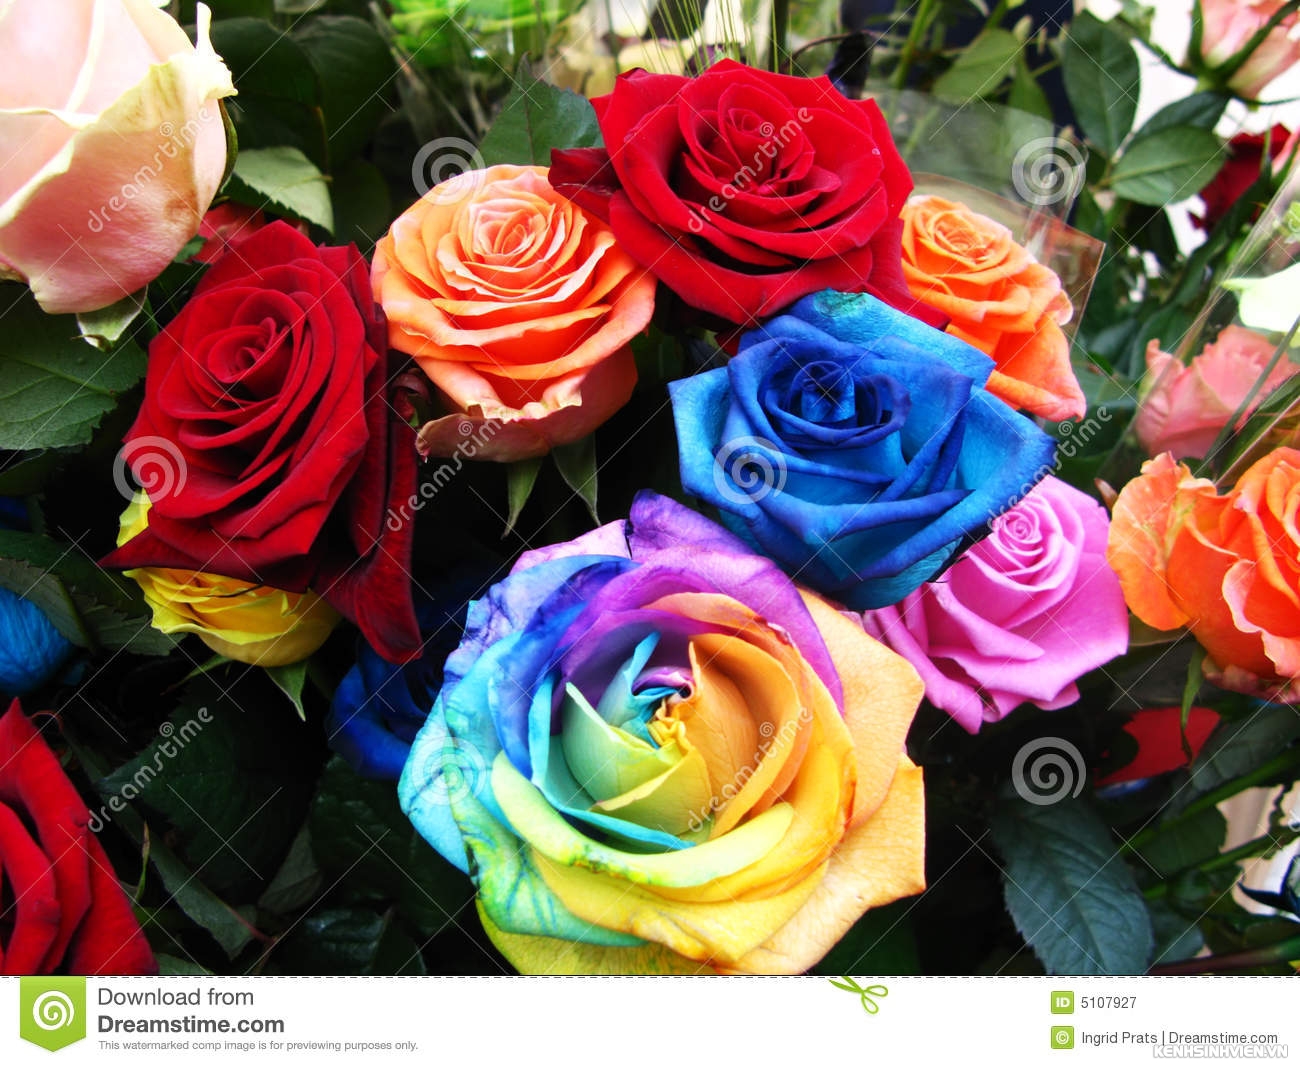 colorful-roses-bloom-5107927.jpg